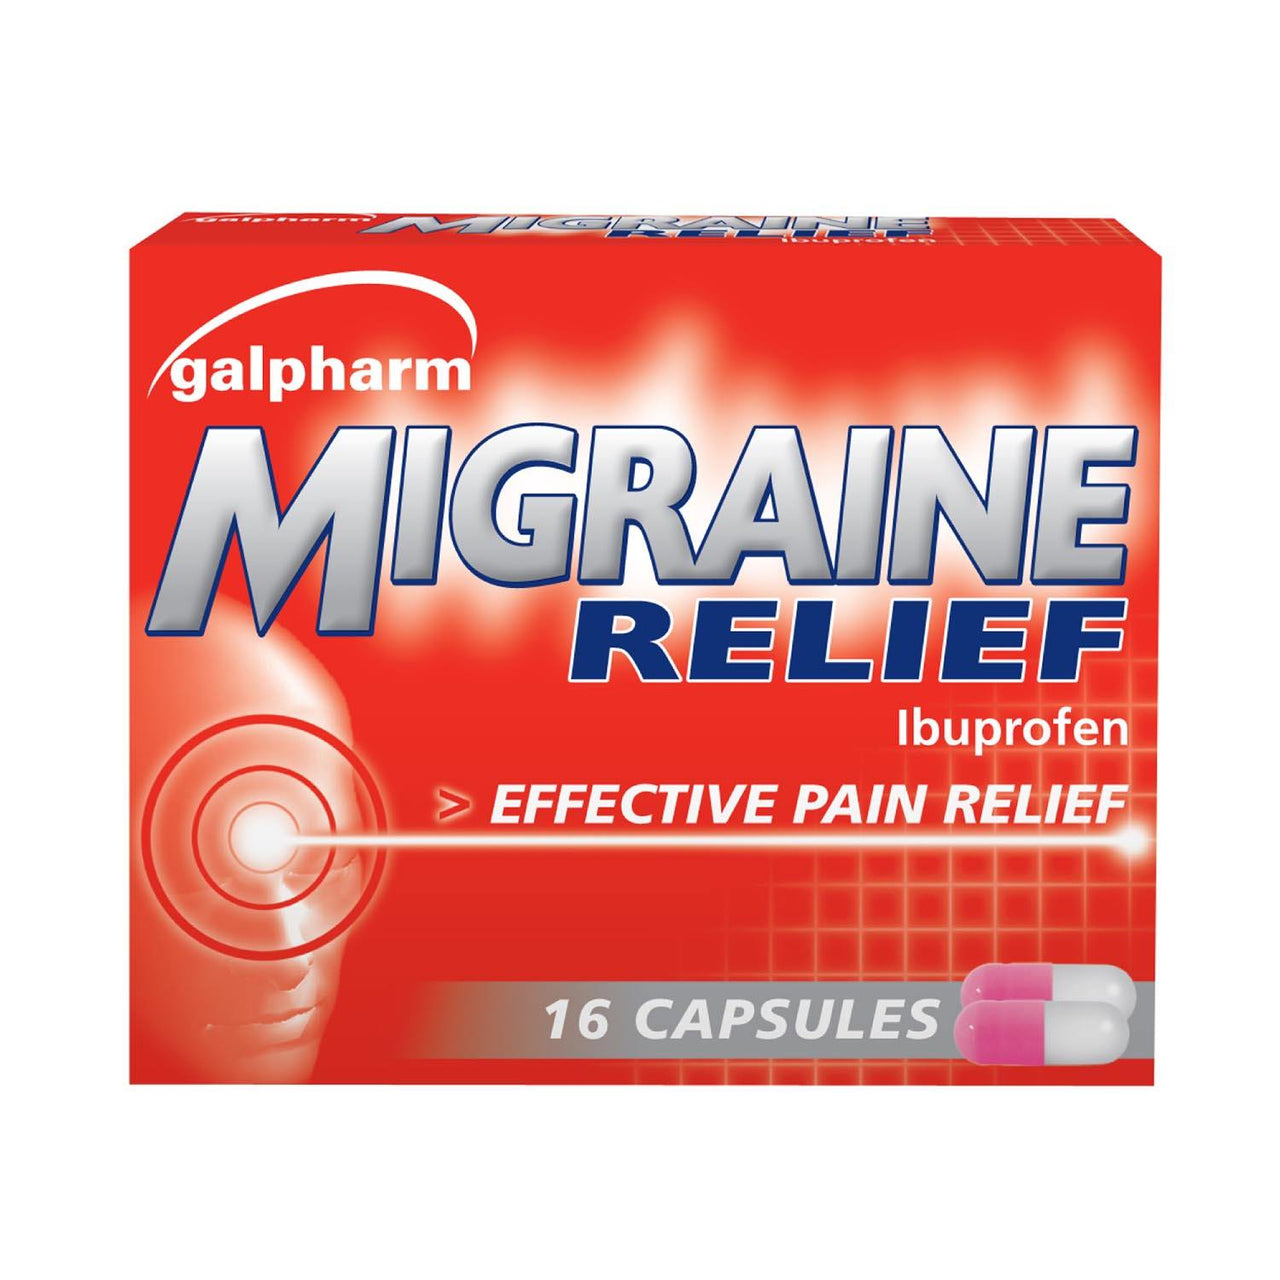 Galpharm Ibuprofen Migraine Relief Capsules - 2 Boxes (32 Capsules) - sassydeals.co.uk